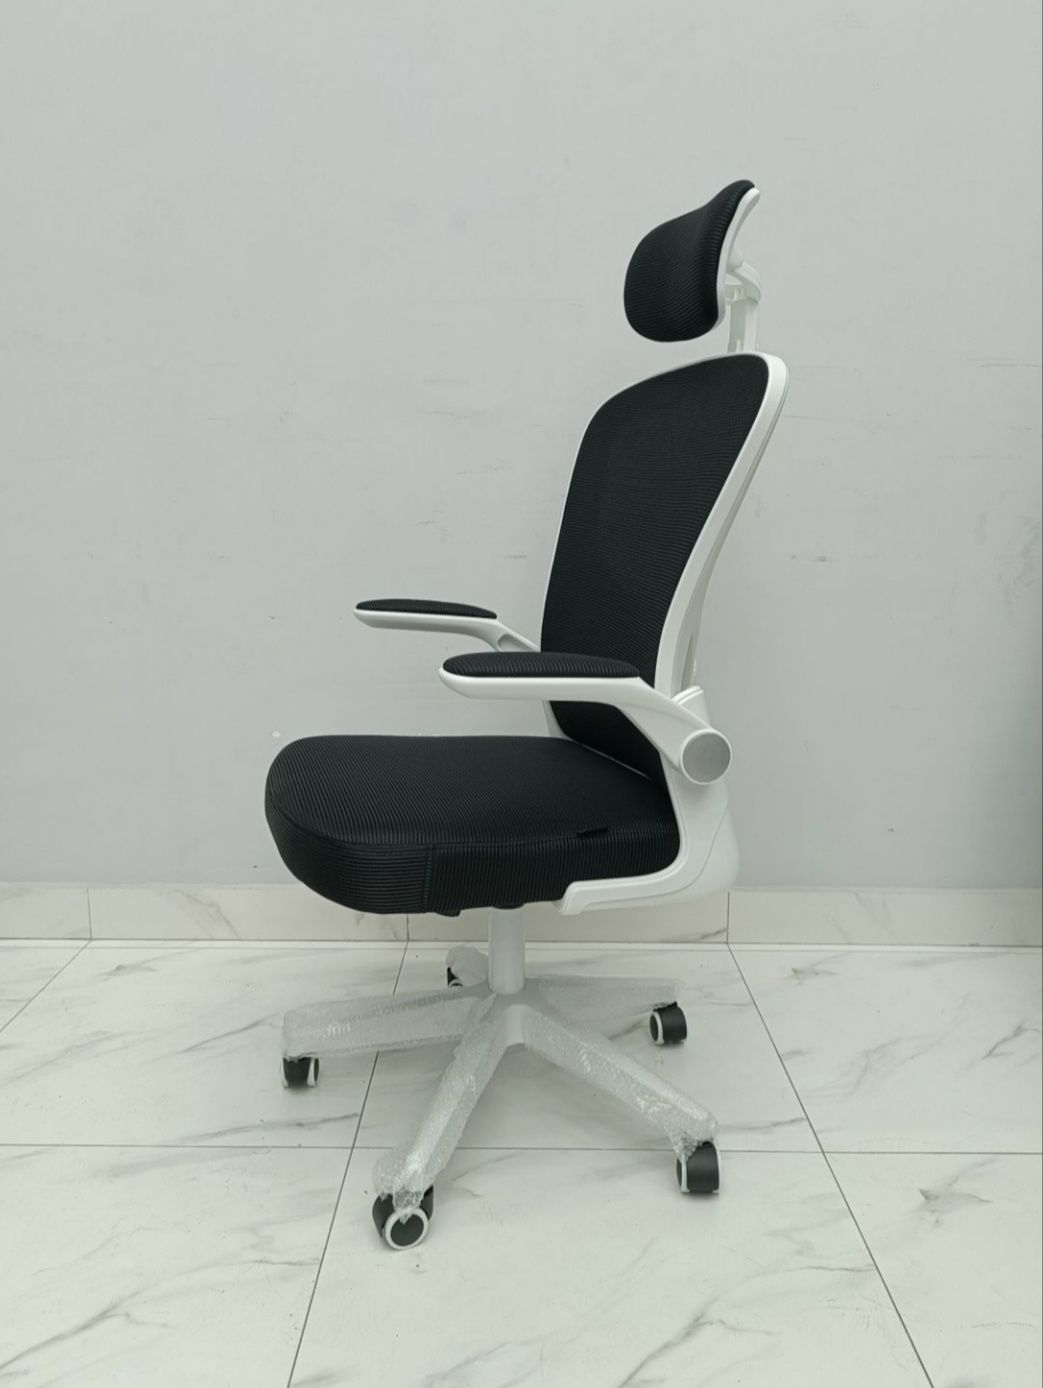 Кресло 7801 White, black, aqua grey со склада. Есть доставка